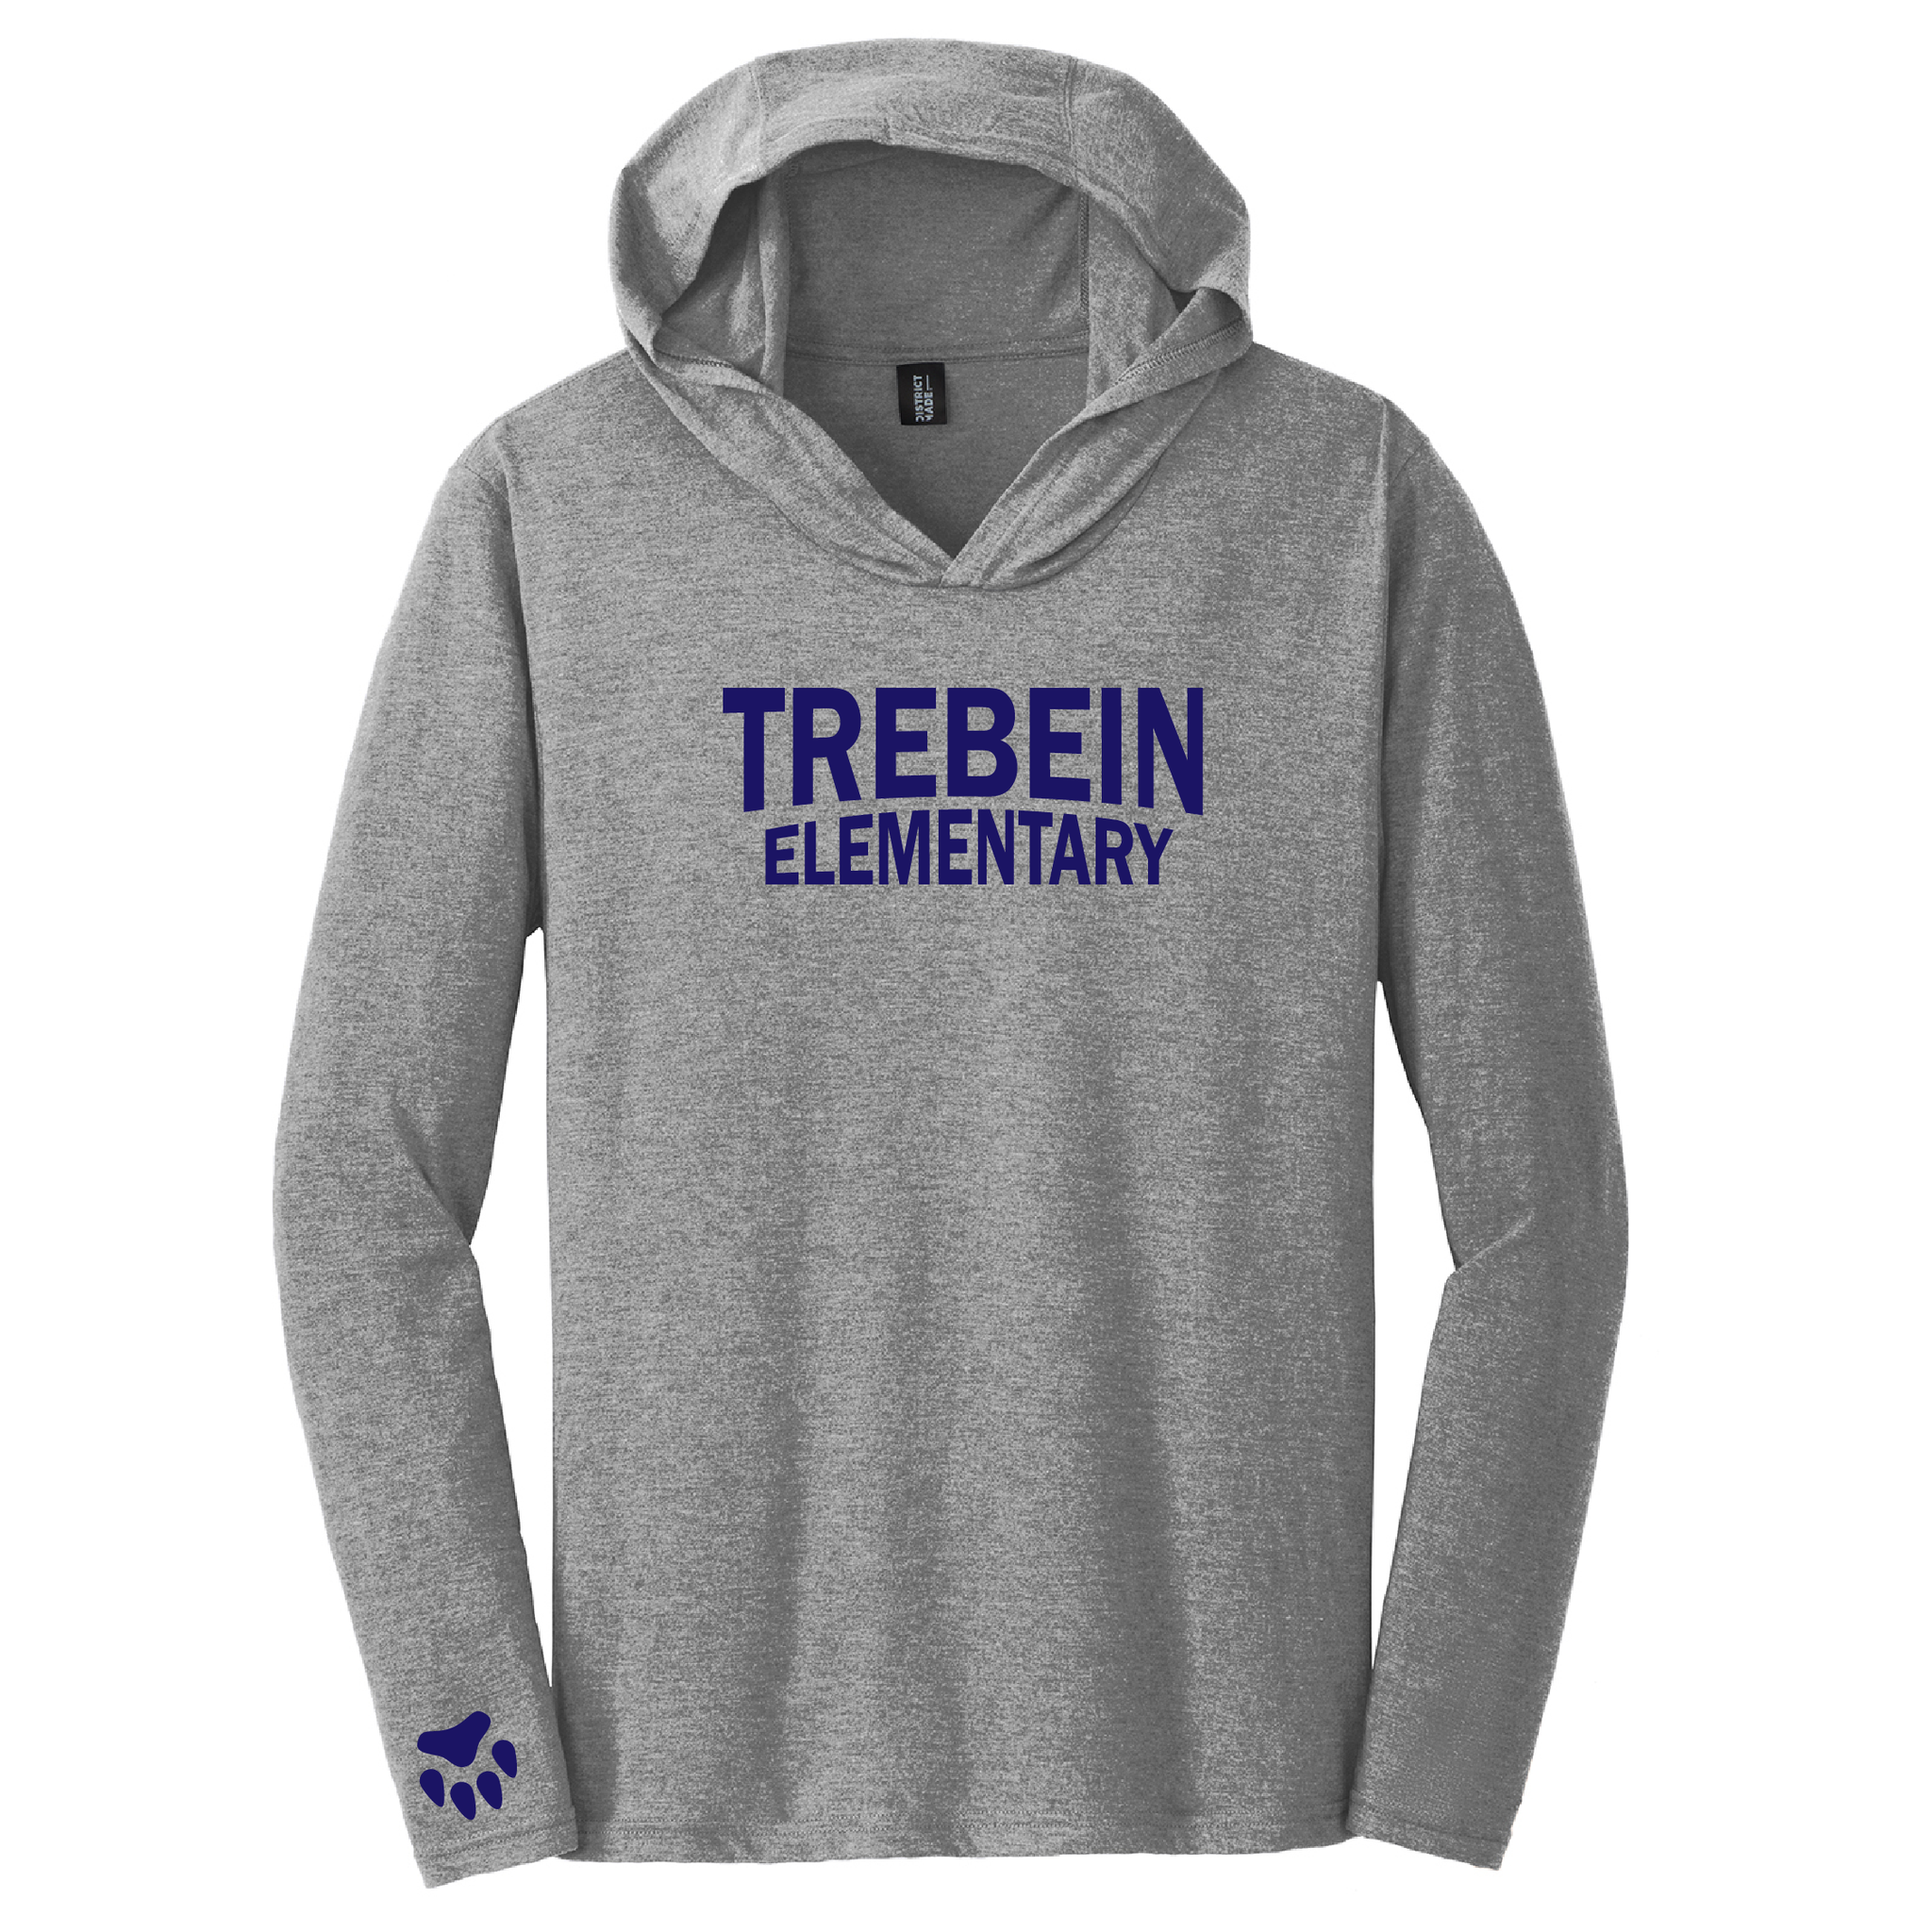 Trebein Elementary Tri-Blend Long Sleeve Hoodie